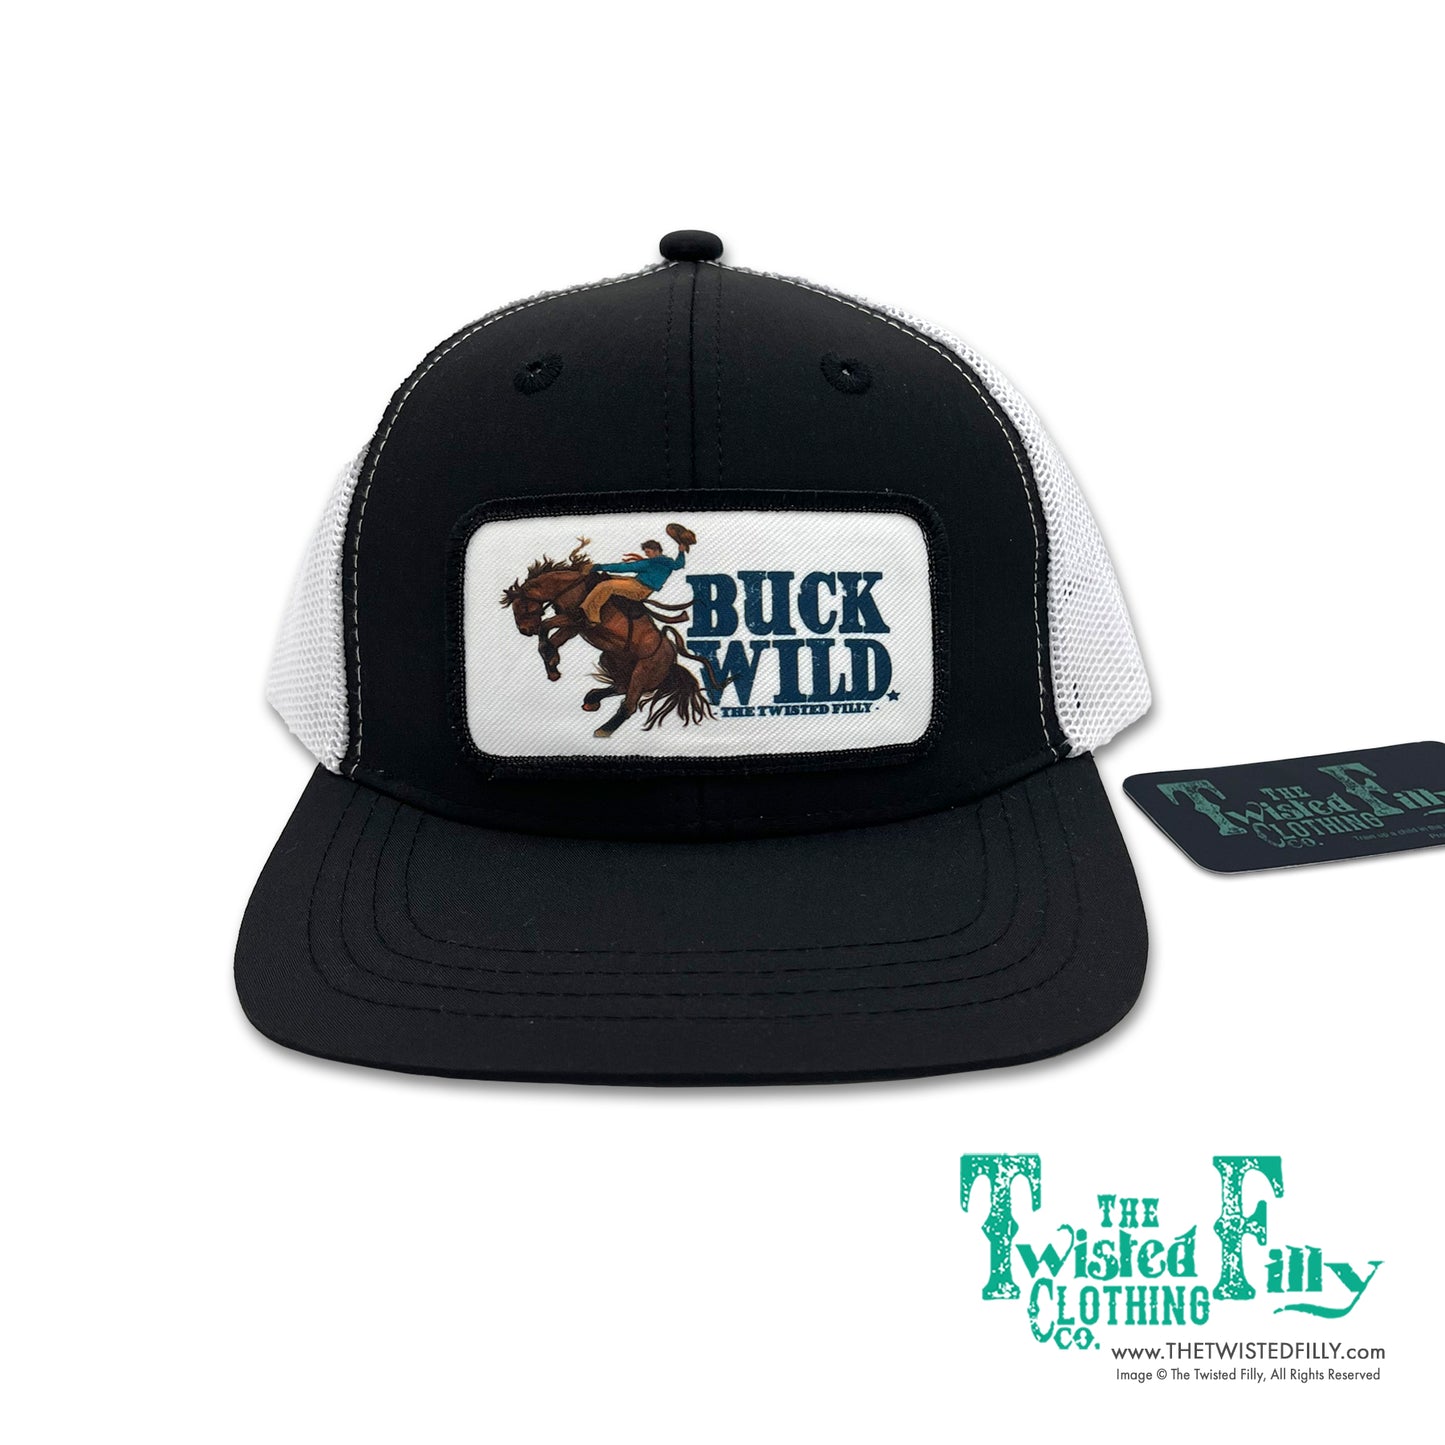 Buck Wild - Infant / Toddler Trucker Hat - Black/White